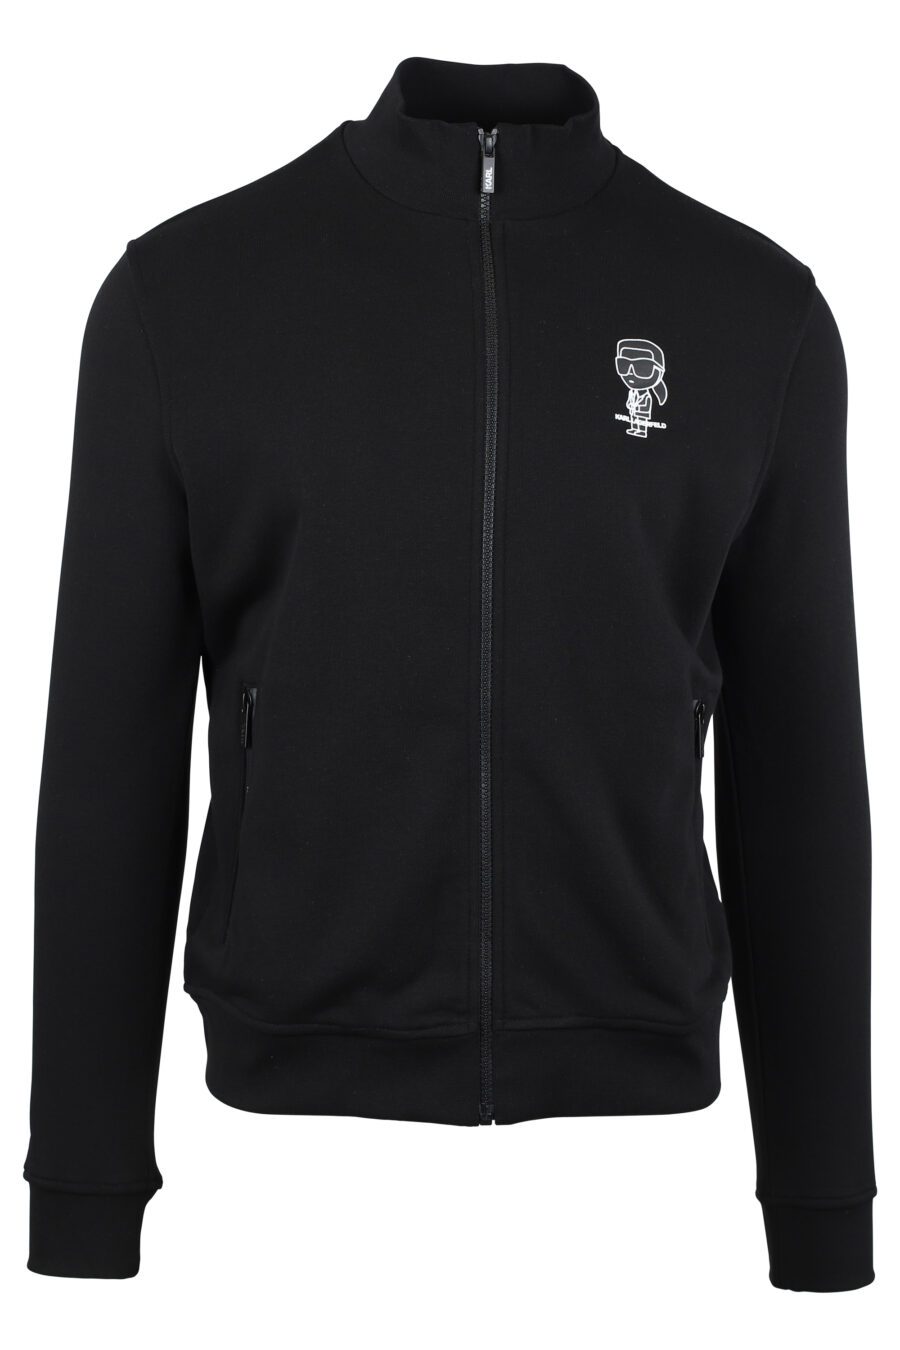 Schwarzes Sweatshirt mit Reißverschluss und "karl"-Logo in weißer Silhouette - IMG 4626